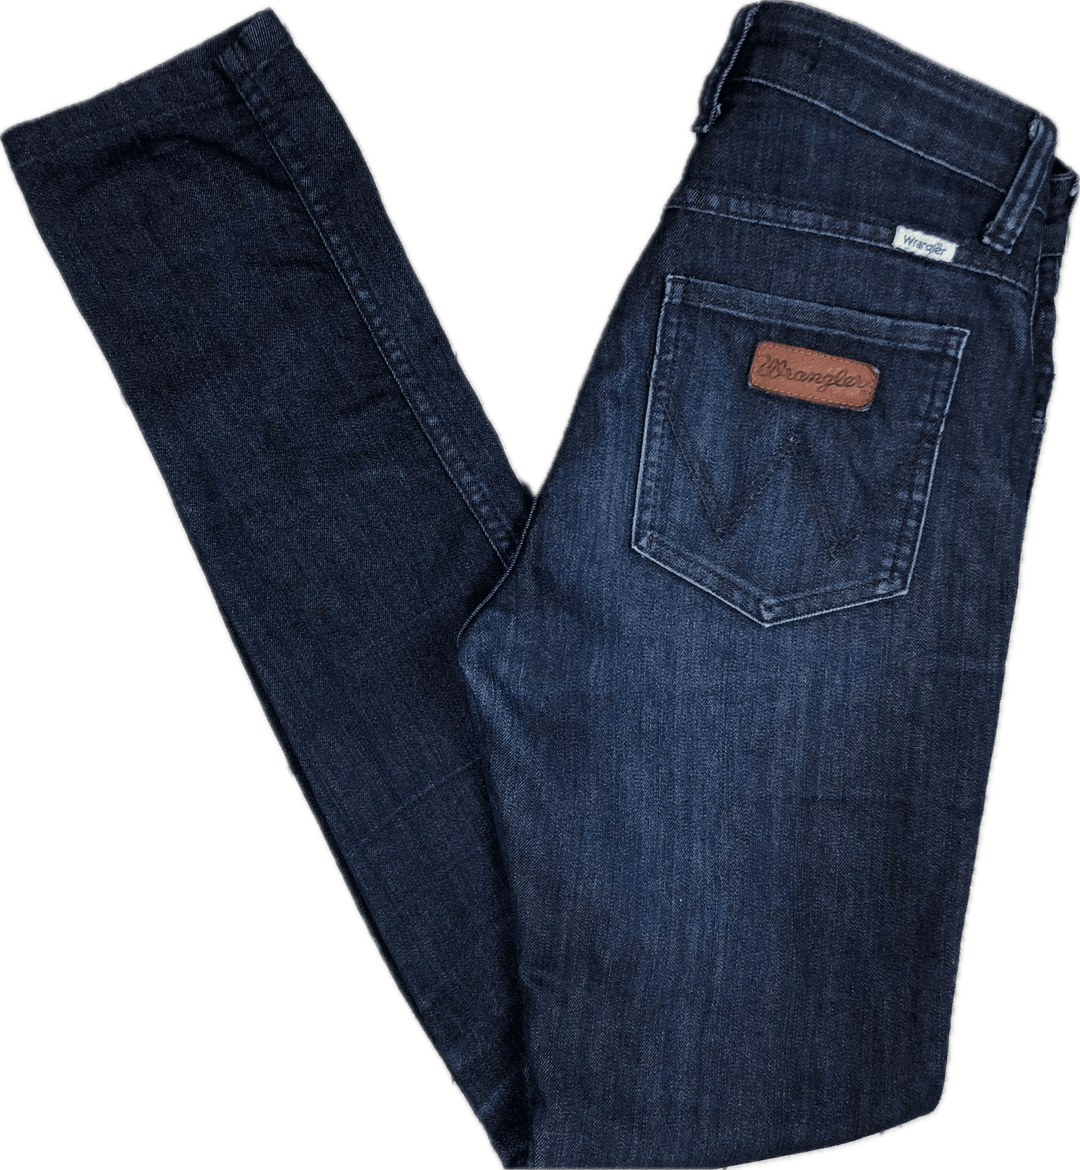 Wrangler 'Mid Twiggy' Skinny Jeans - Size 8 - Jean Pool